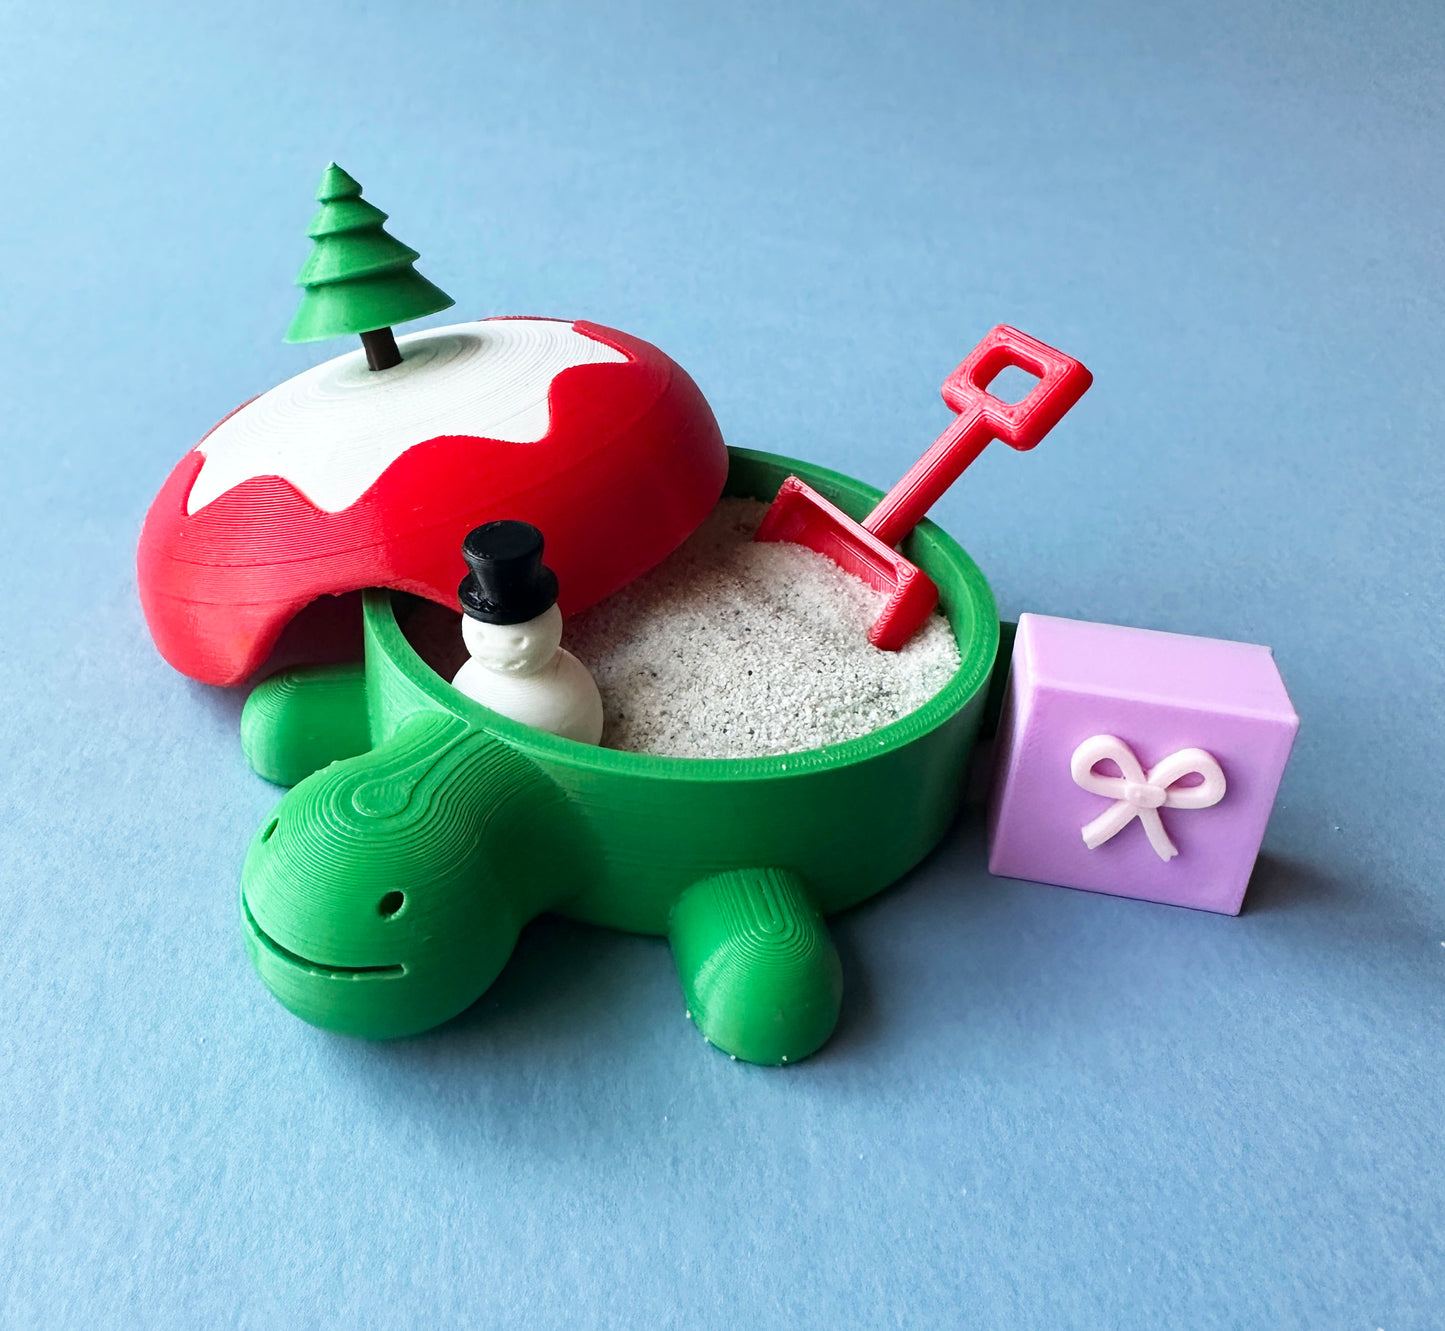 Christmas Carey the Desktop Sandbox Turtle with Sand / Sand Slime